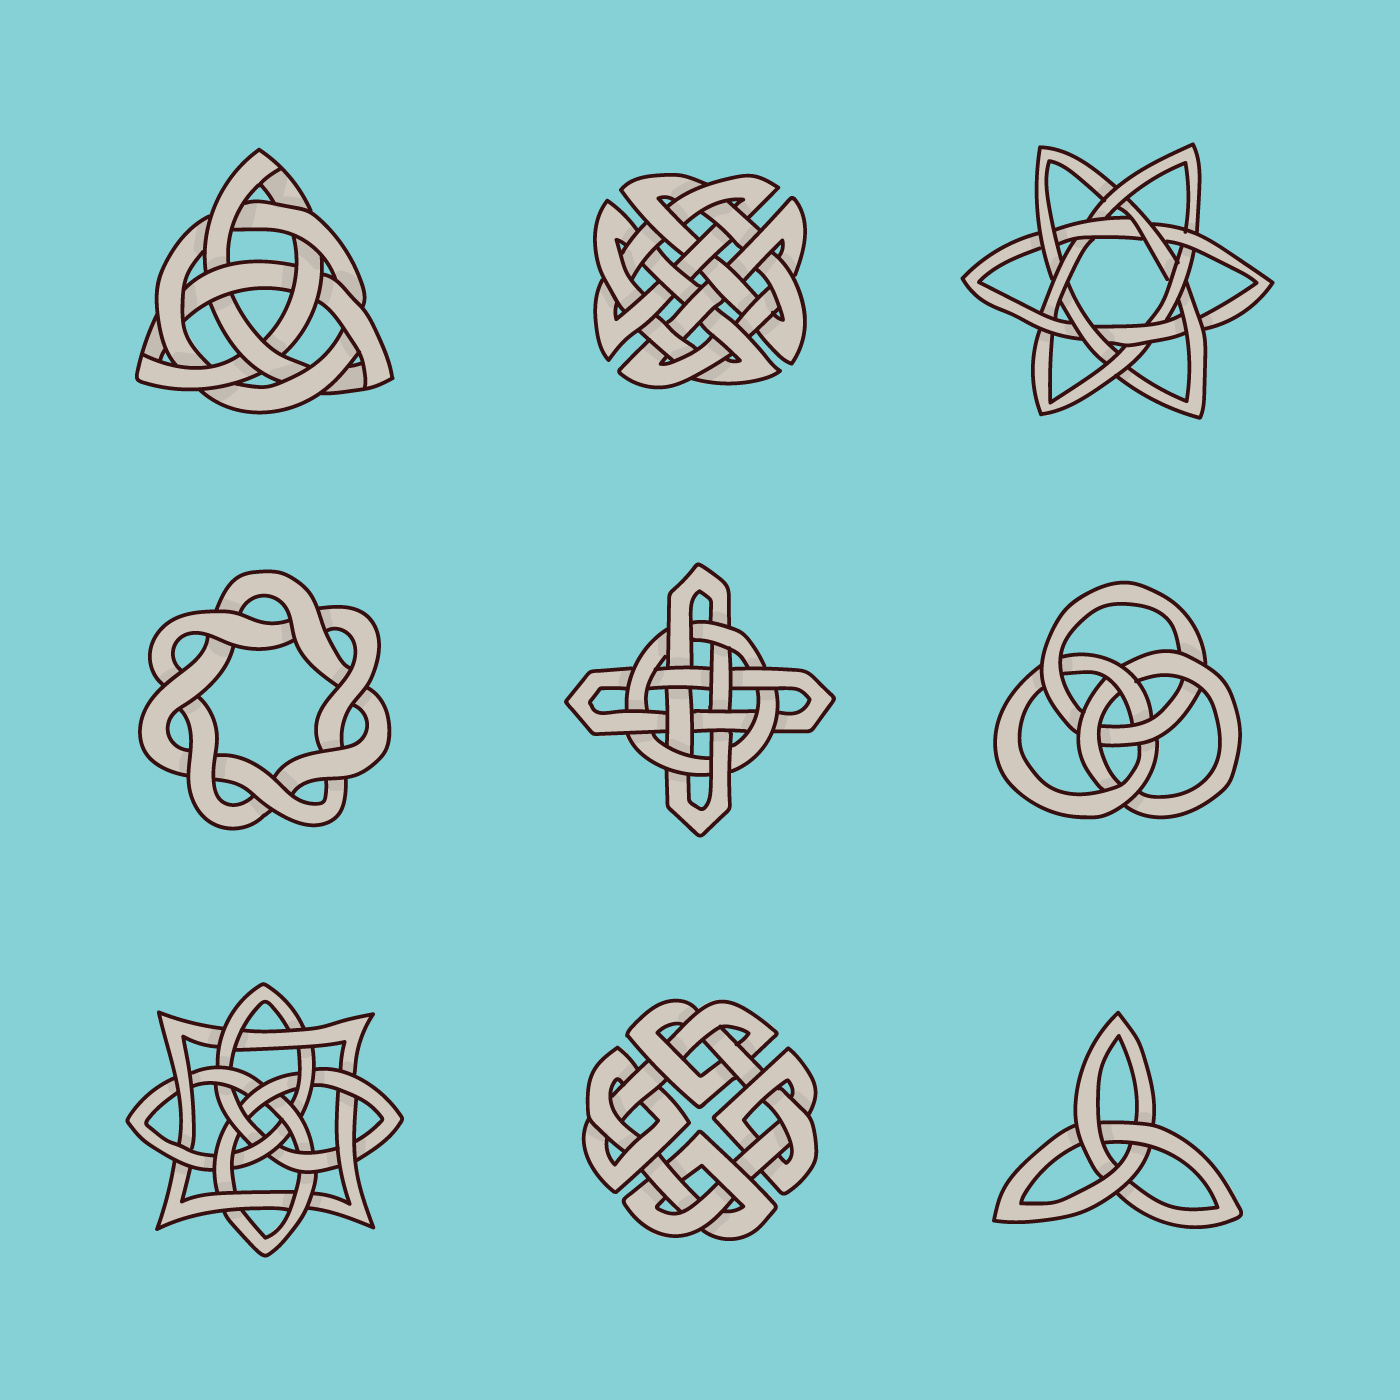 Simboli Celtici Scarica Immagini Vettoriali Gratis Grafica Vettoriale E Disegno Modelli